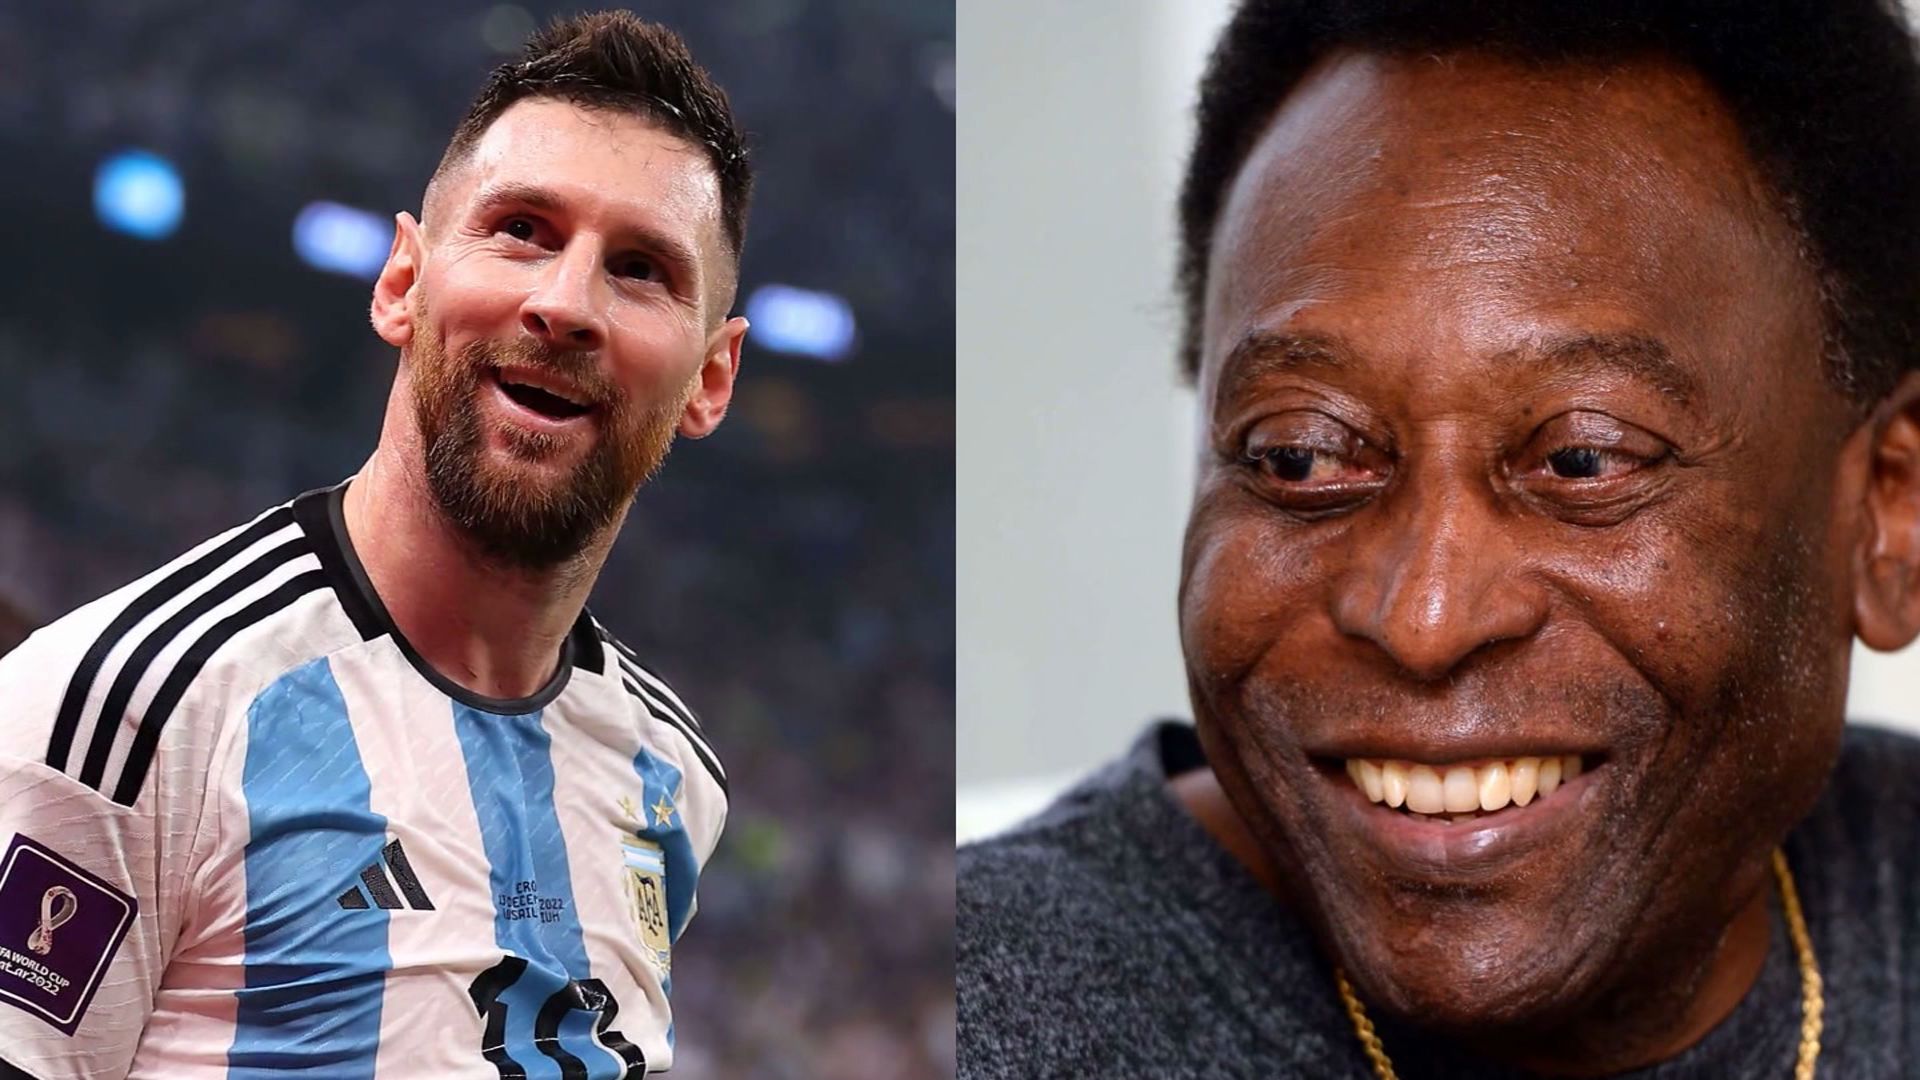 ¡Viva el fútbol! Pelé cumplió su último deseo, que Argentina ganara el Mundial del 2022